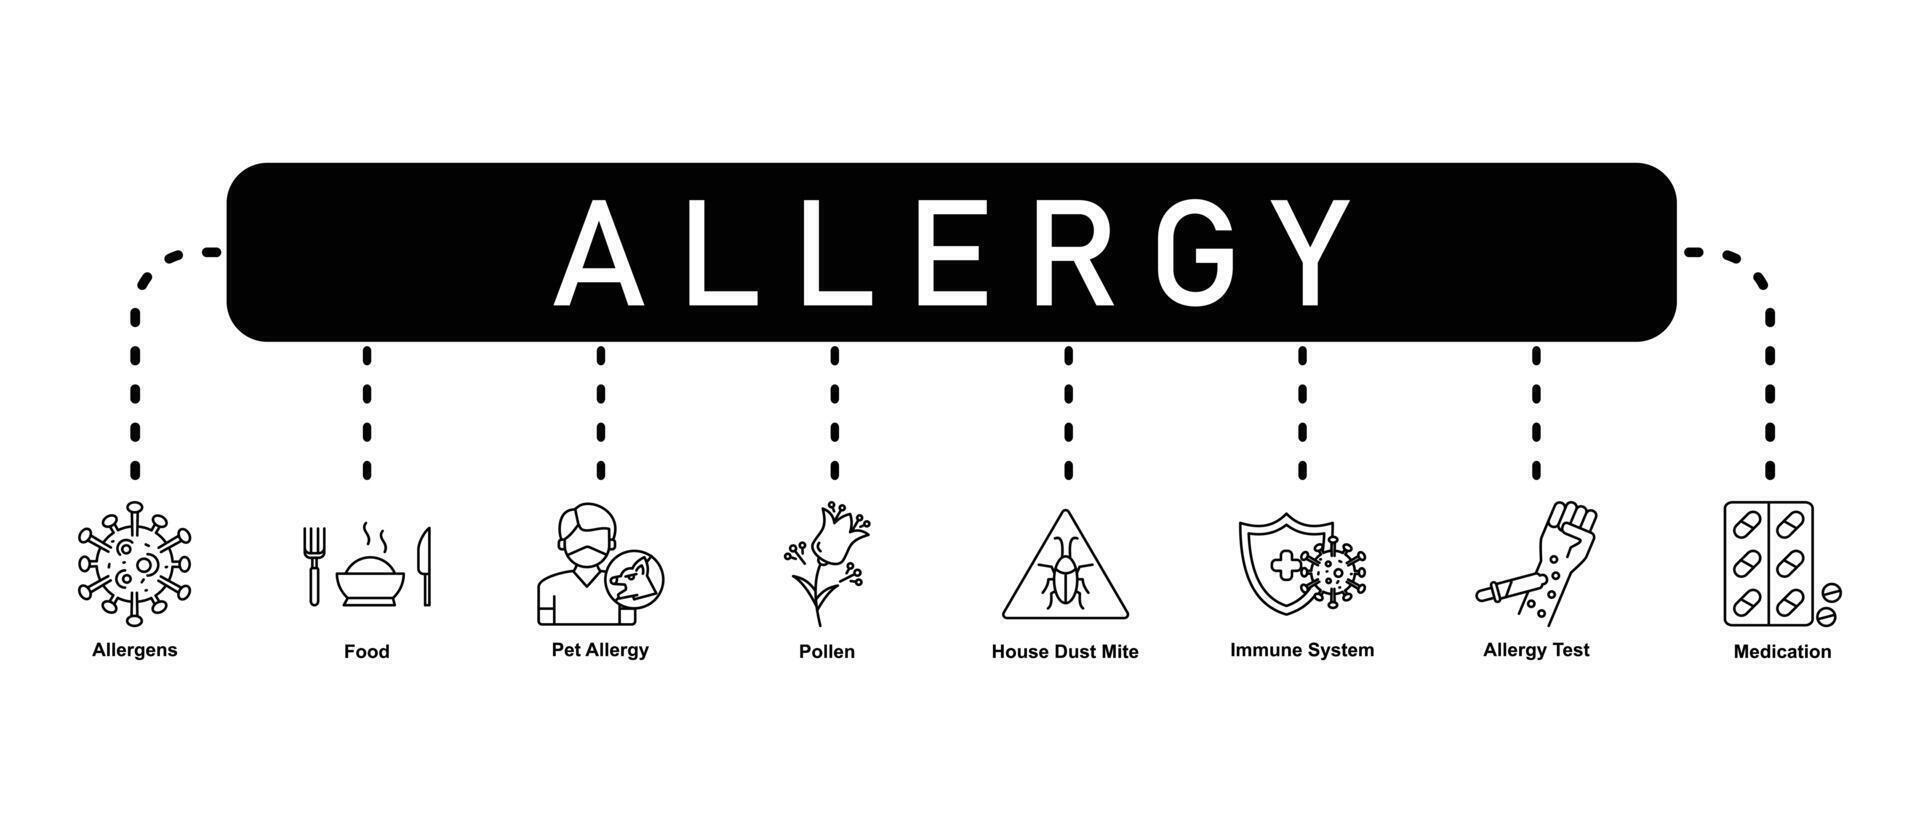 allergie banier website icoon vector illustratie concept met icoon van allergenen, voedsel, huisdier allergie, stuifmeel, huis stof mijt, immuun systeem, allergie test en geneesmiddel Aan wit achtergrond